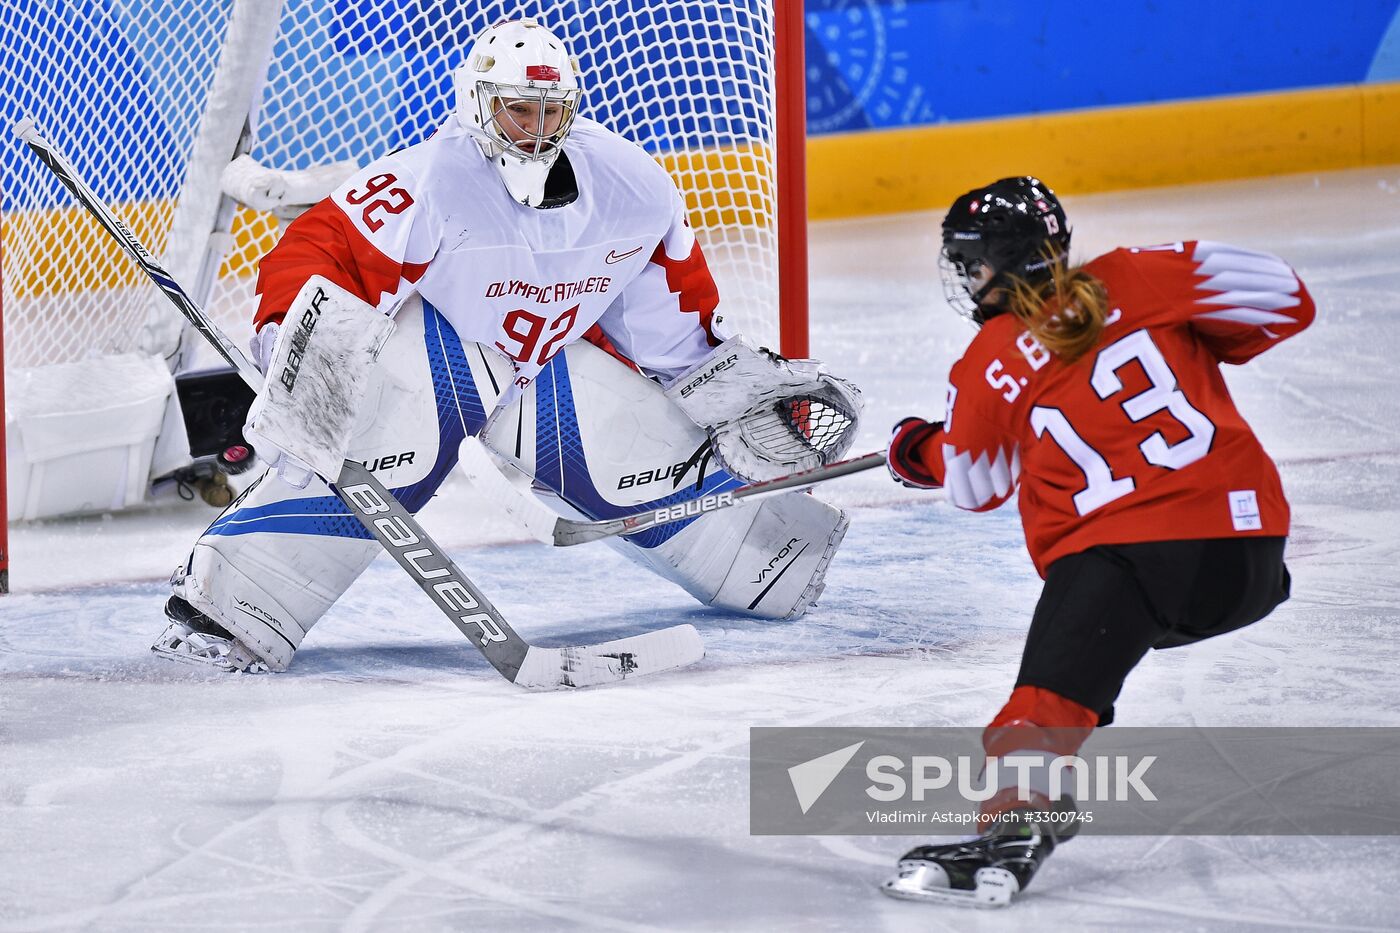 2018 Winter Olympics. Ice hockey. Women. Russia vs. Switzerland